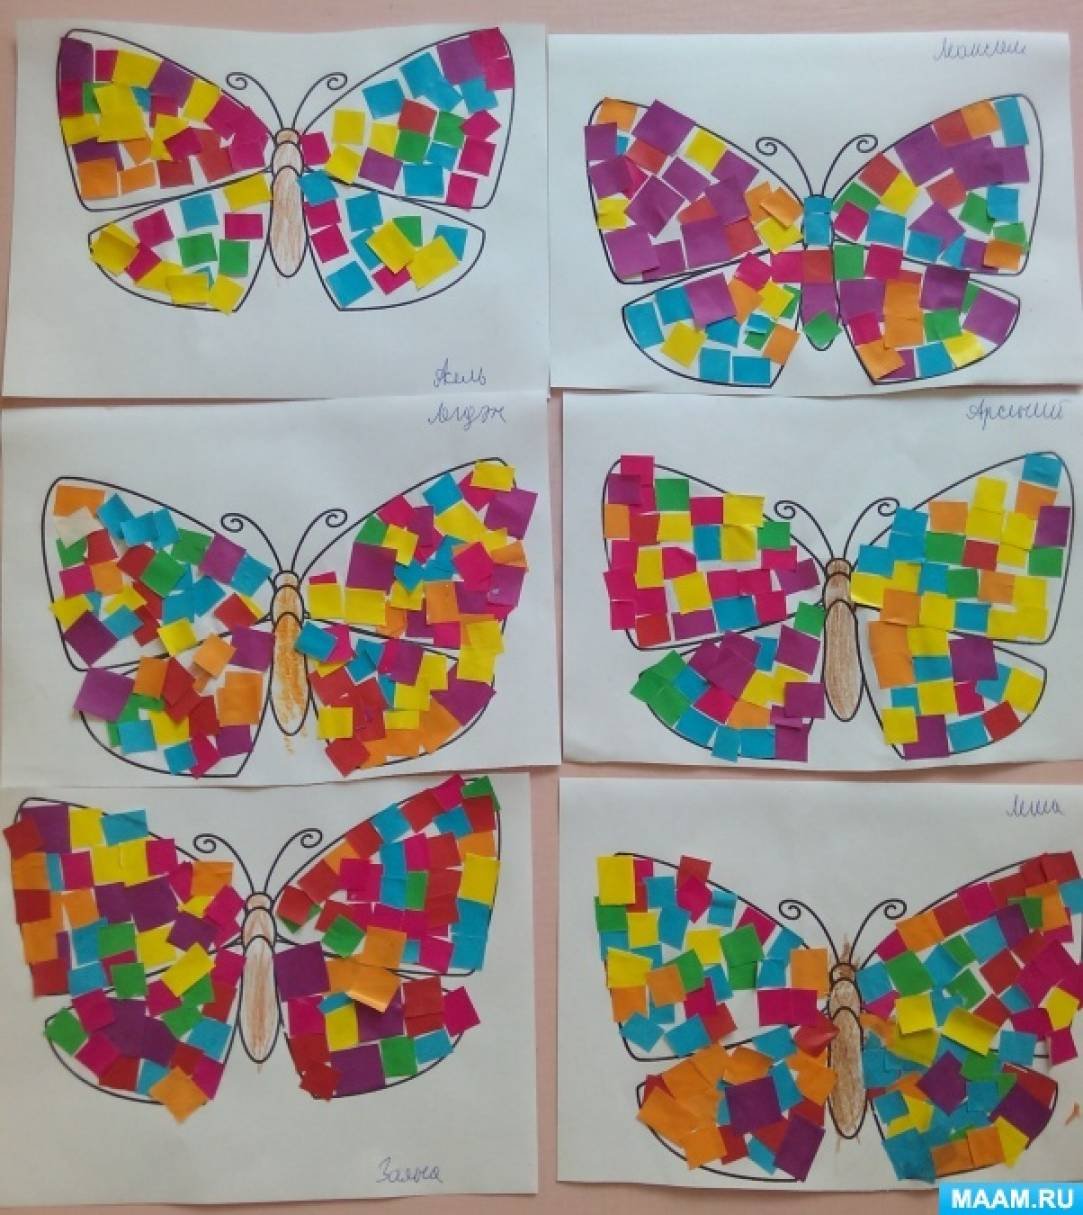 Бабочка аппликация для детей средняя группа Колдина. Поделка бабочка. Поделка бабочка из цветной бумаги. Поделка бабочка для дошкольников. Конспект аппликации бабочка